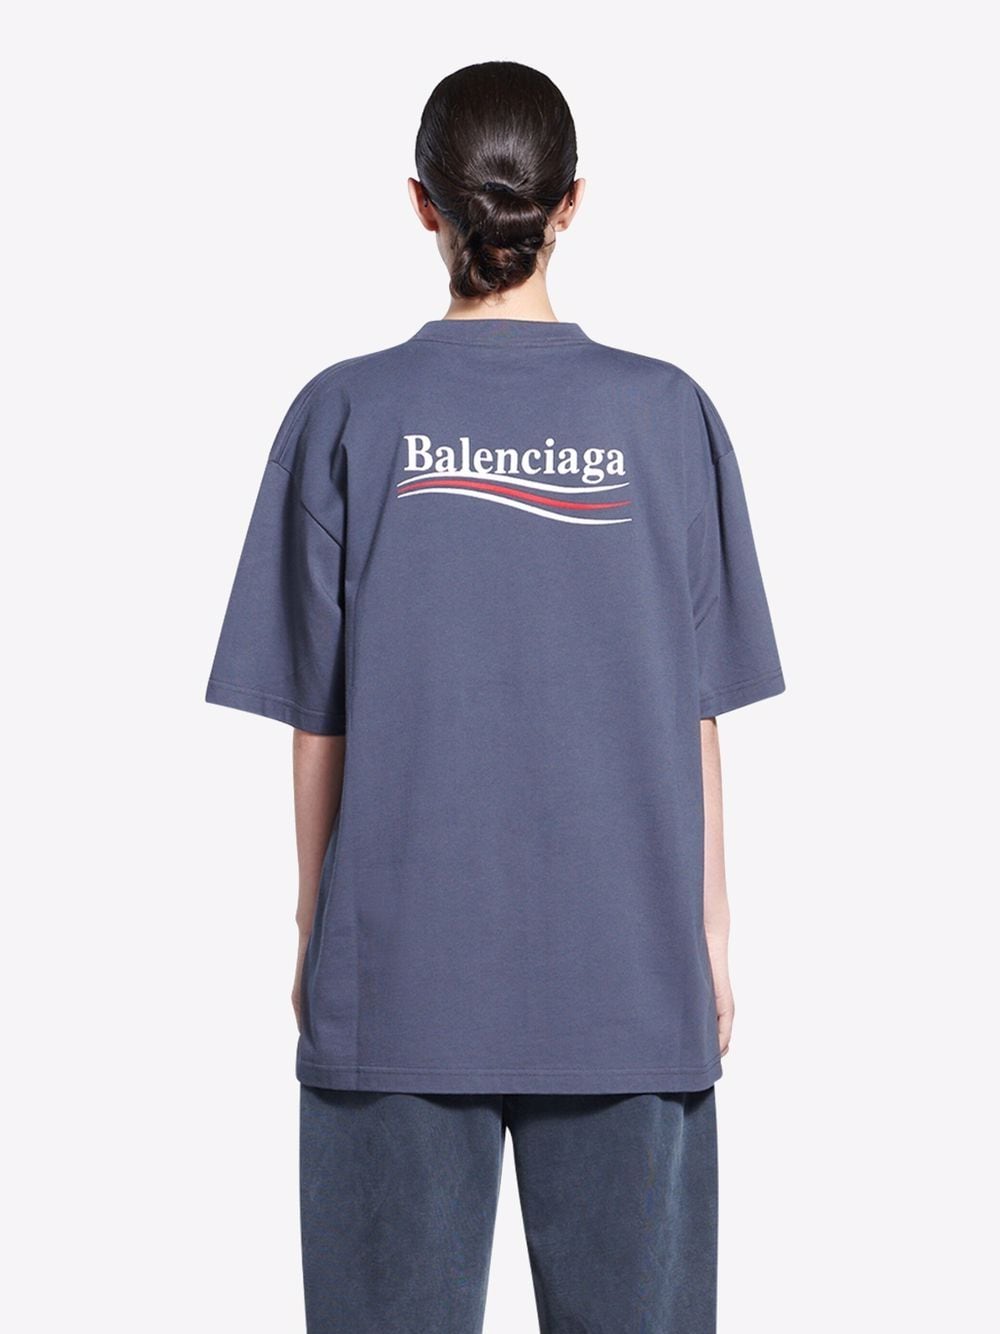 Balenciaga バレンシアガ Political Campaign ロゴ Tシャツ - Farfetch